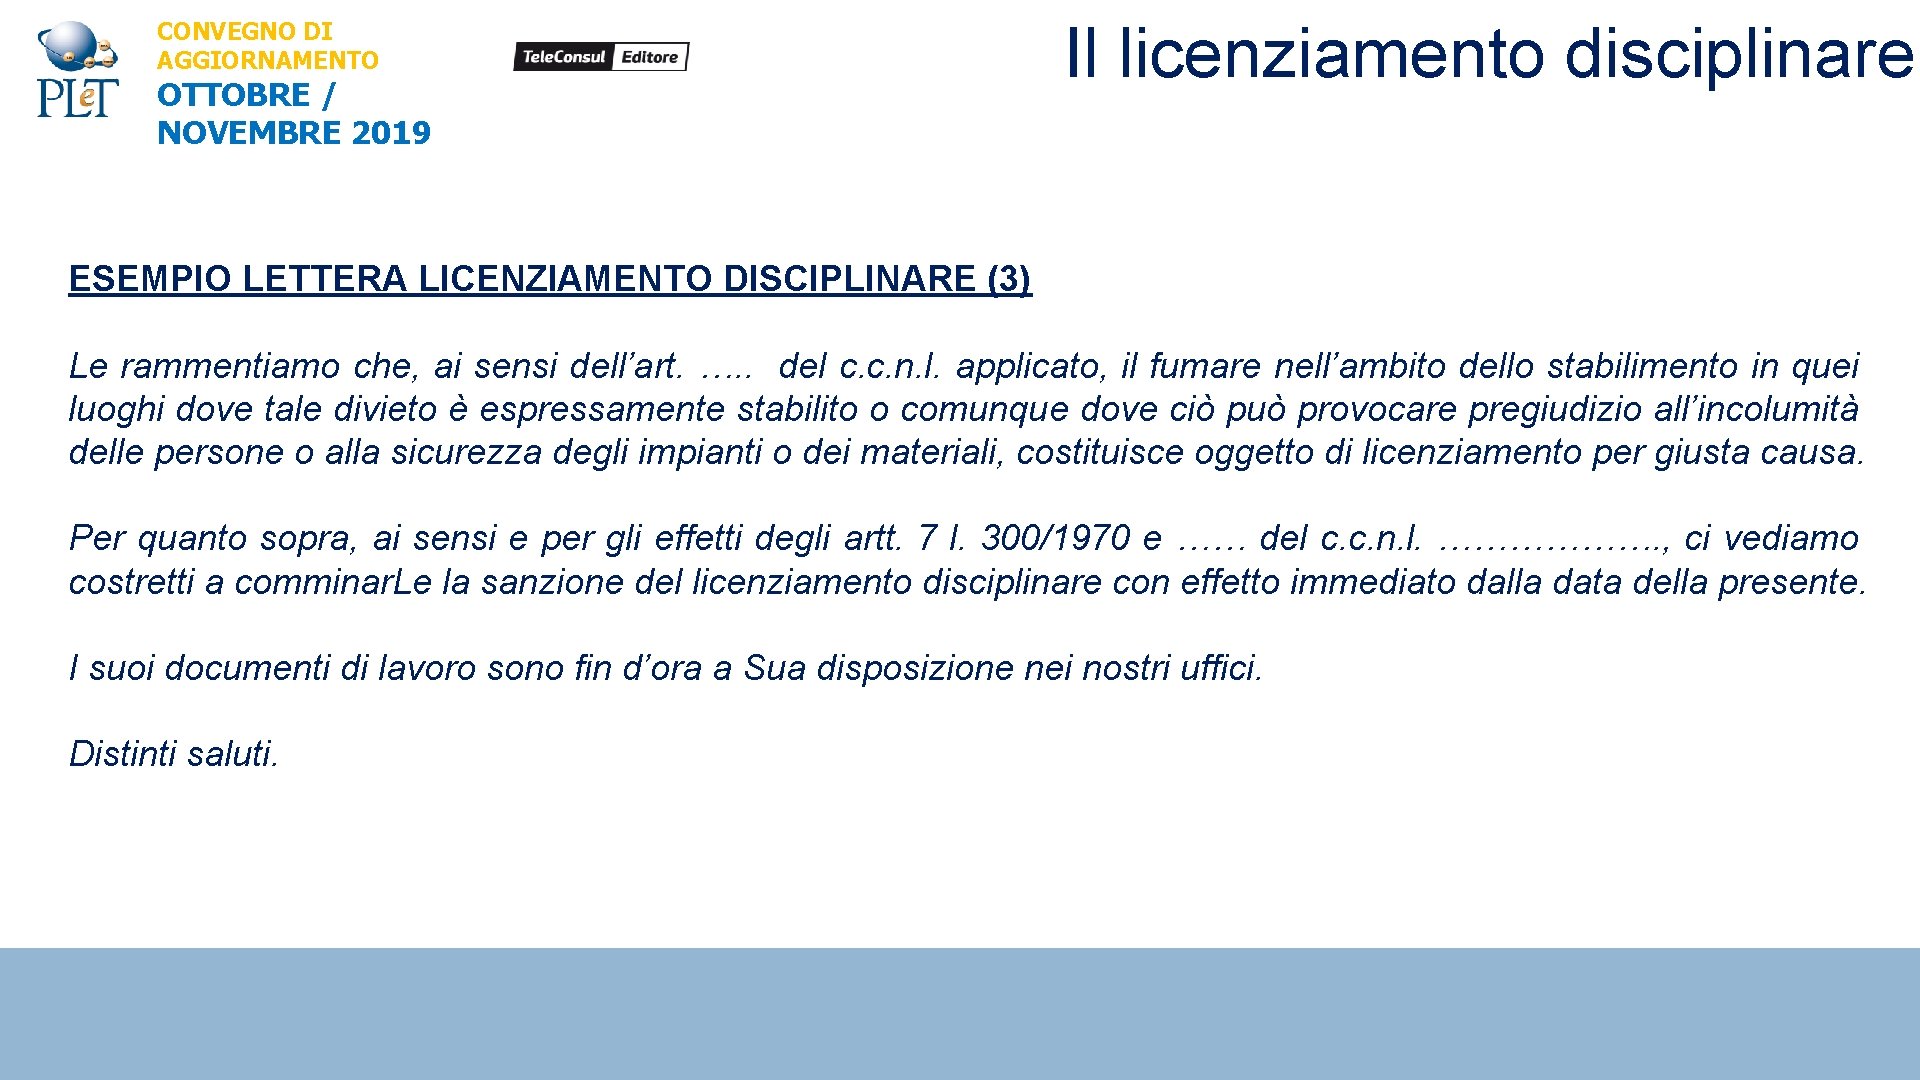 CONVEGNO DI AGGIORNAMENTO OTTOBRE / NOVEMBRE 2019 Il licenziamento disciplinare ESEMPIO LETTERA LICENZIAMENTO DISCIPLINARE